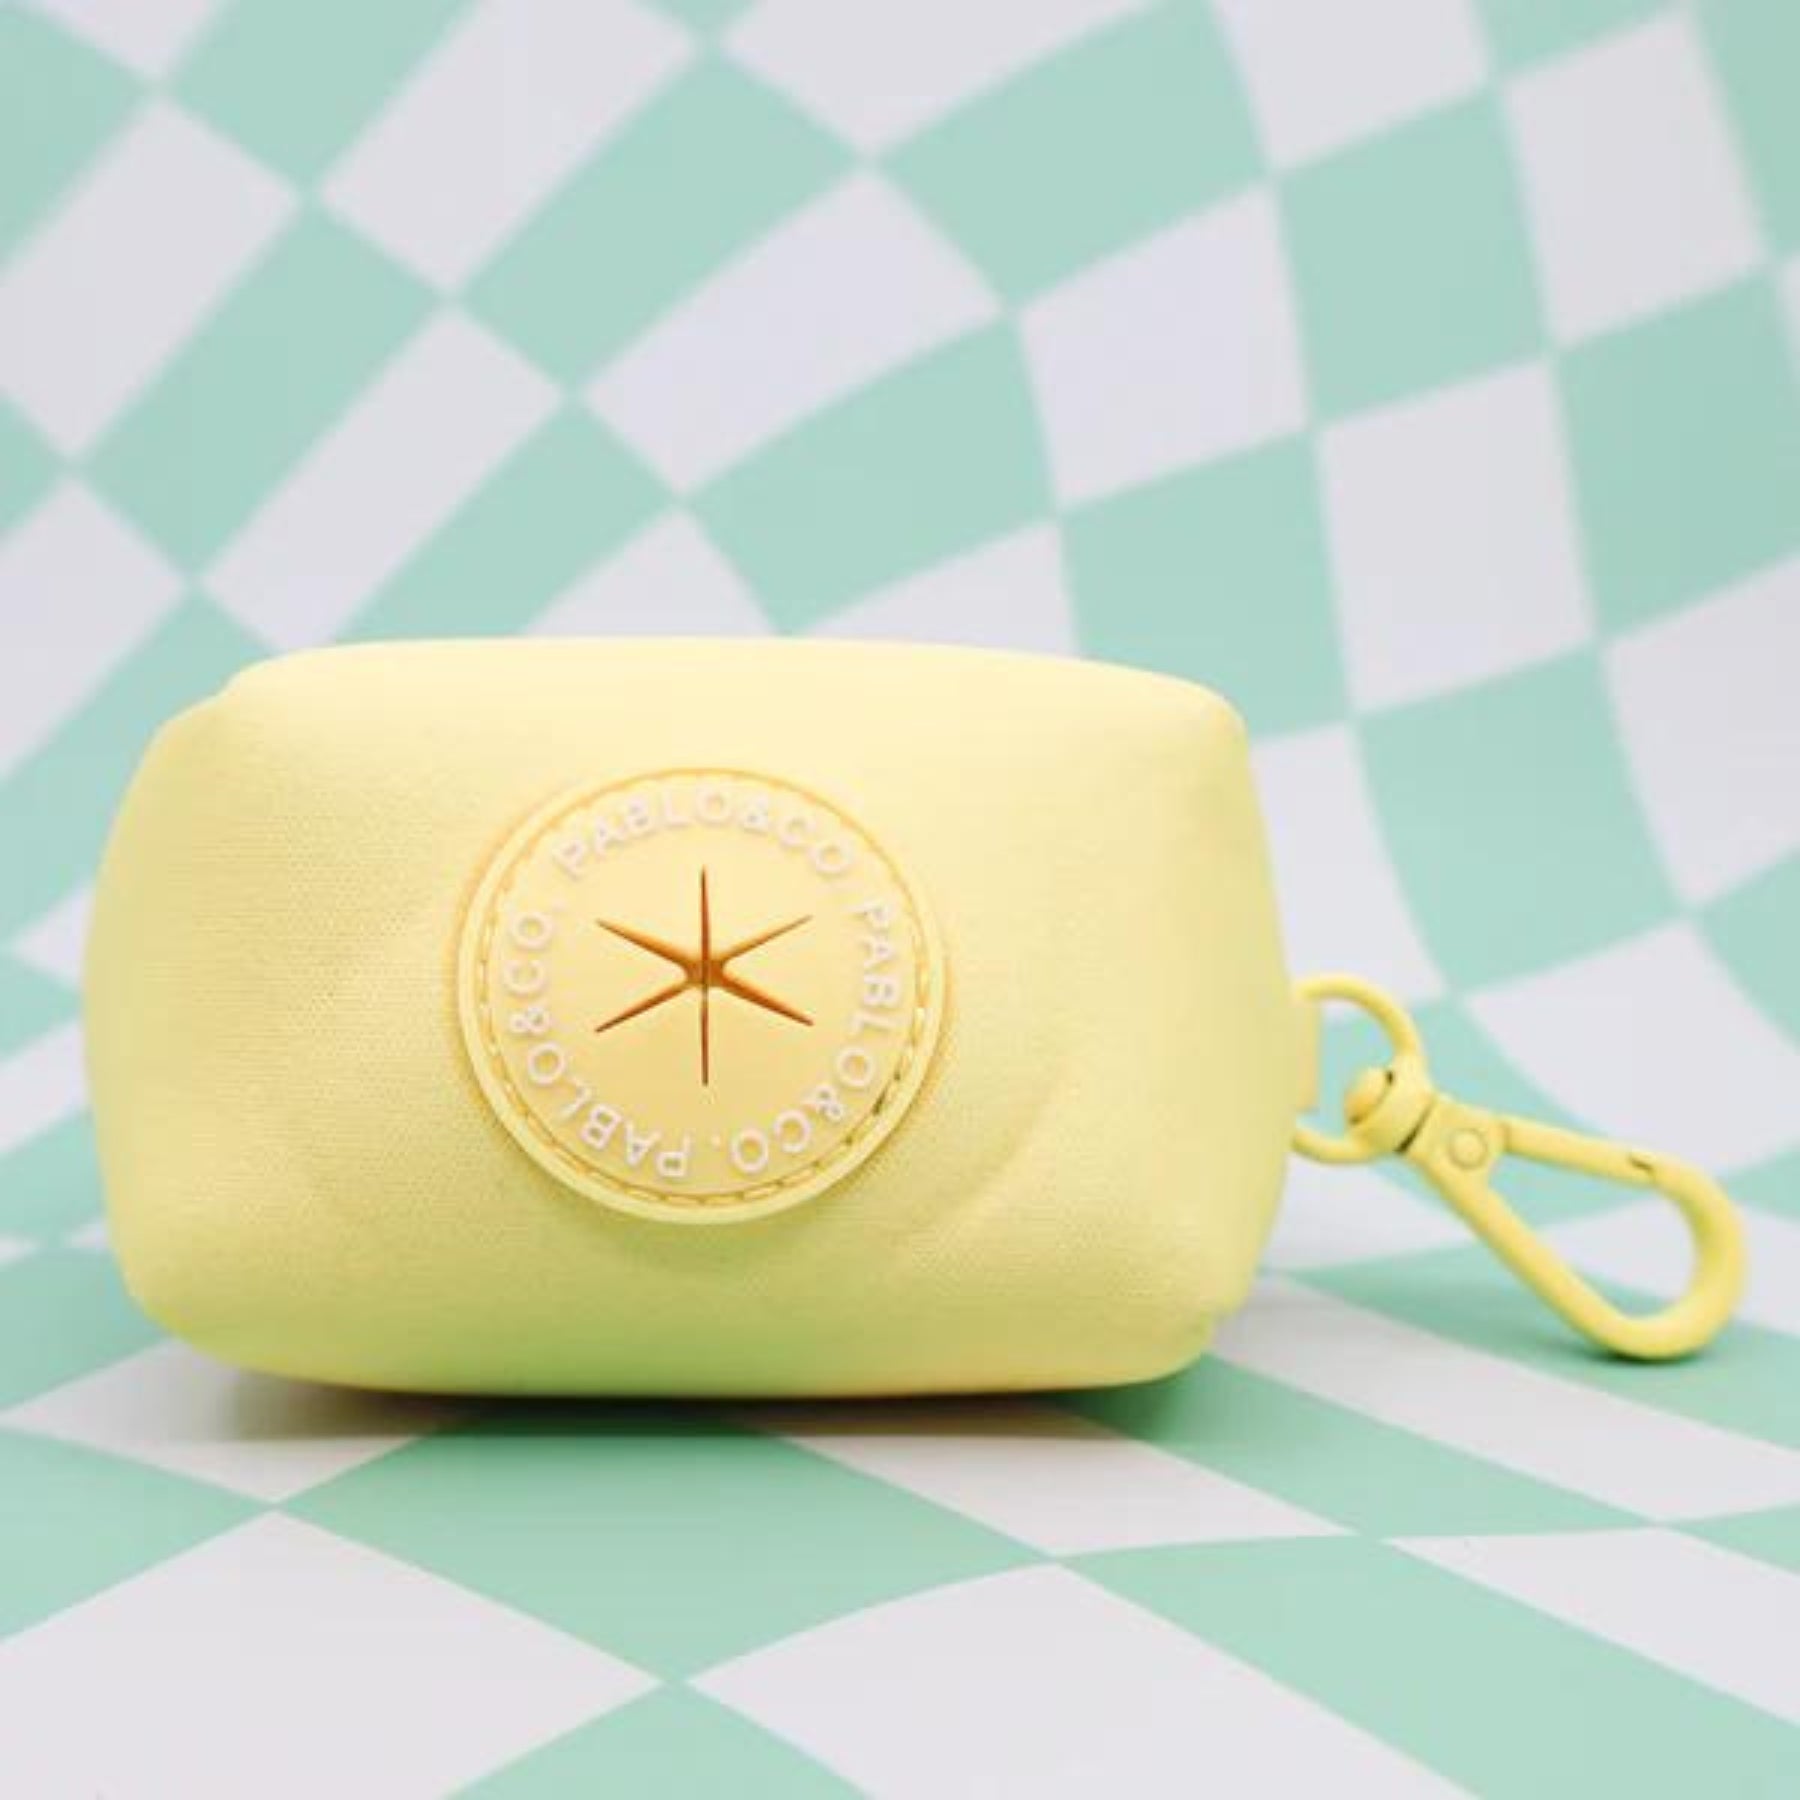 Lemonade Poop Bag Holder - Pooch Luxury